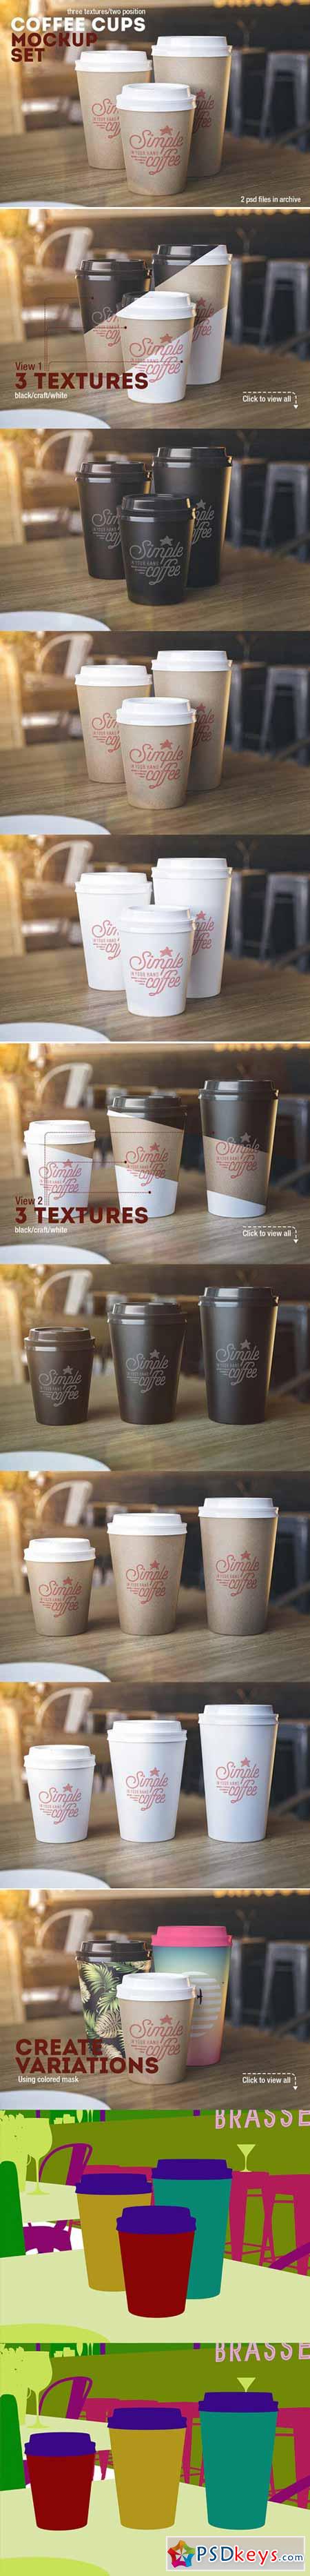 Coffee Cups Mockup 467009